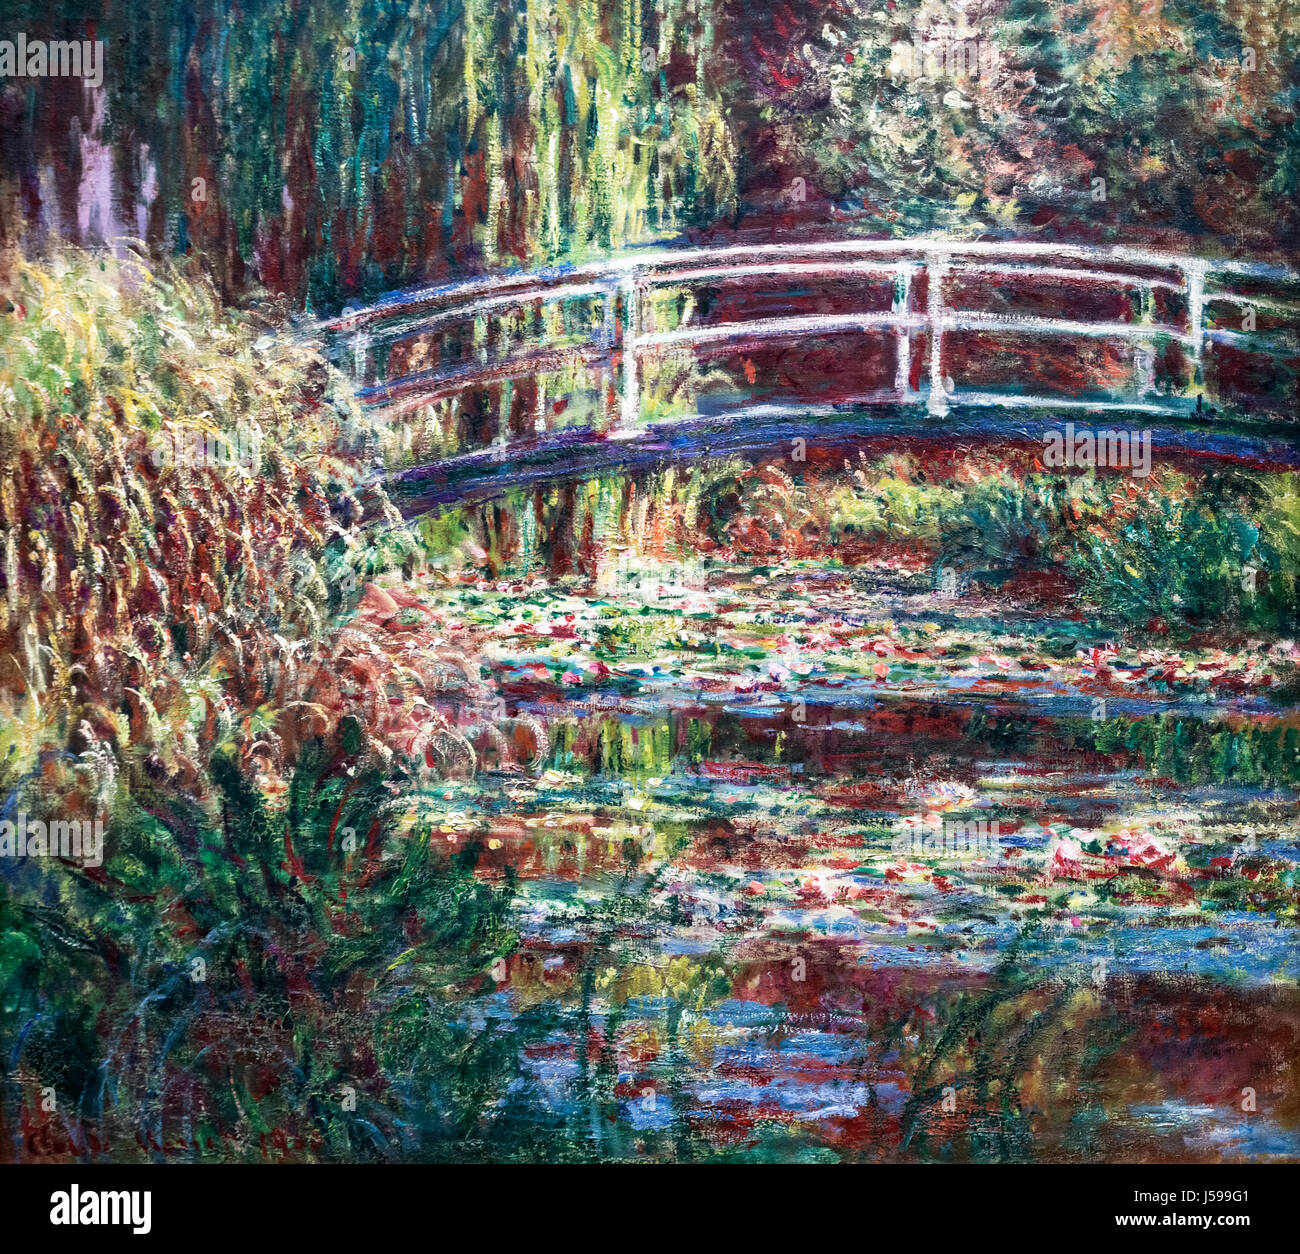 Monet. Gemälde mit dem Titel "Le Bassin Aux Nympheas, Harmonie Rose" (Seerosenteich, Rosa Harmonie) von Claude Monet (1840-1926), Öl auf Leinwand, 1900 Stockfoto